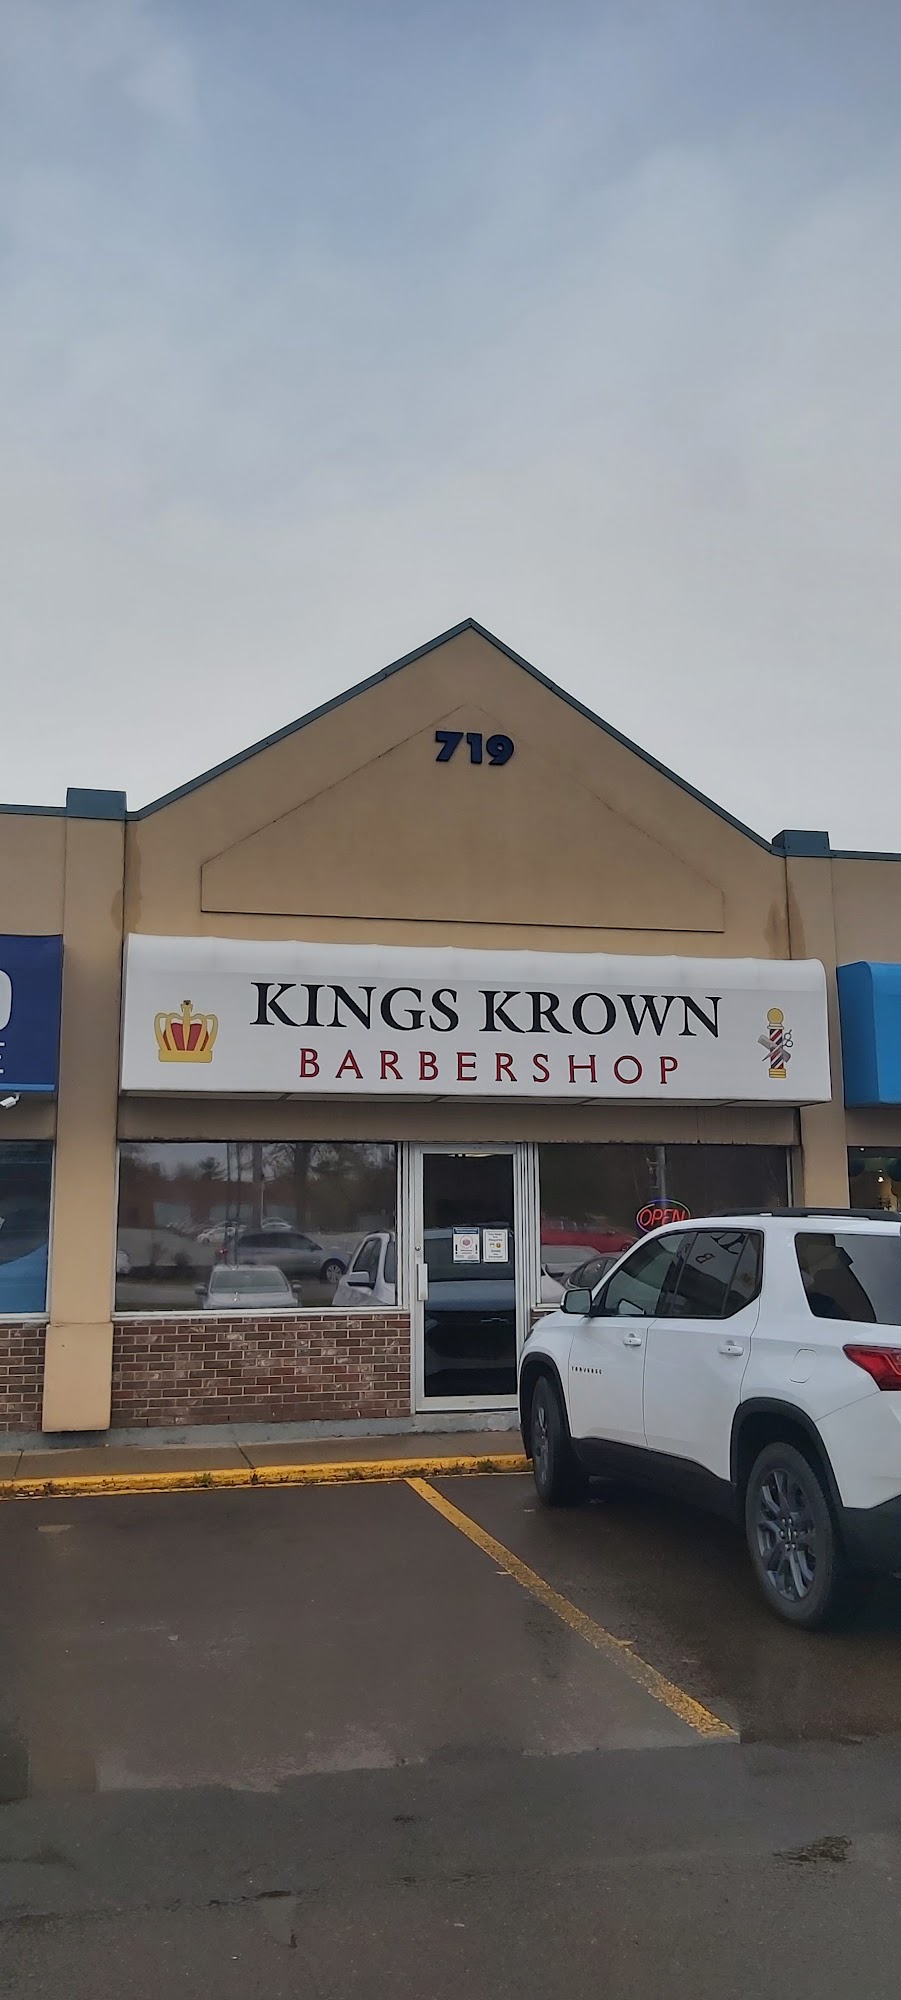 King's Krown Men's Haircuts 719 Coverdale Rd, Riverview New Brunswick E1B 3L4